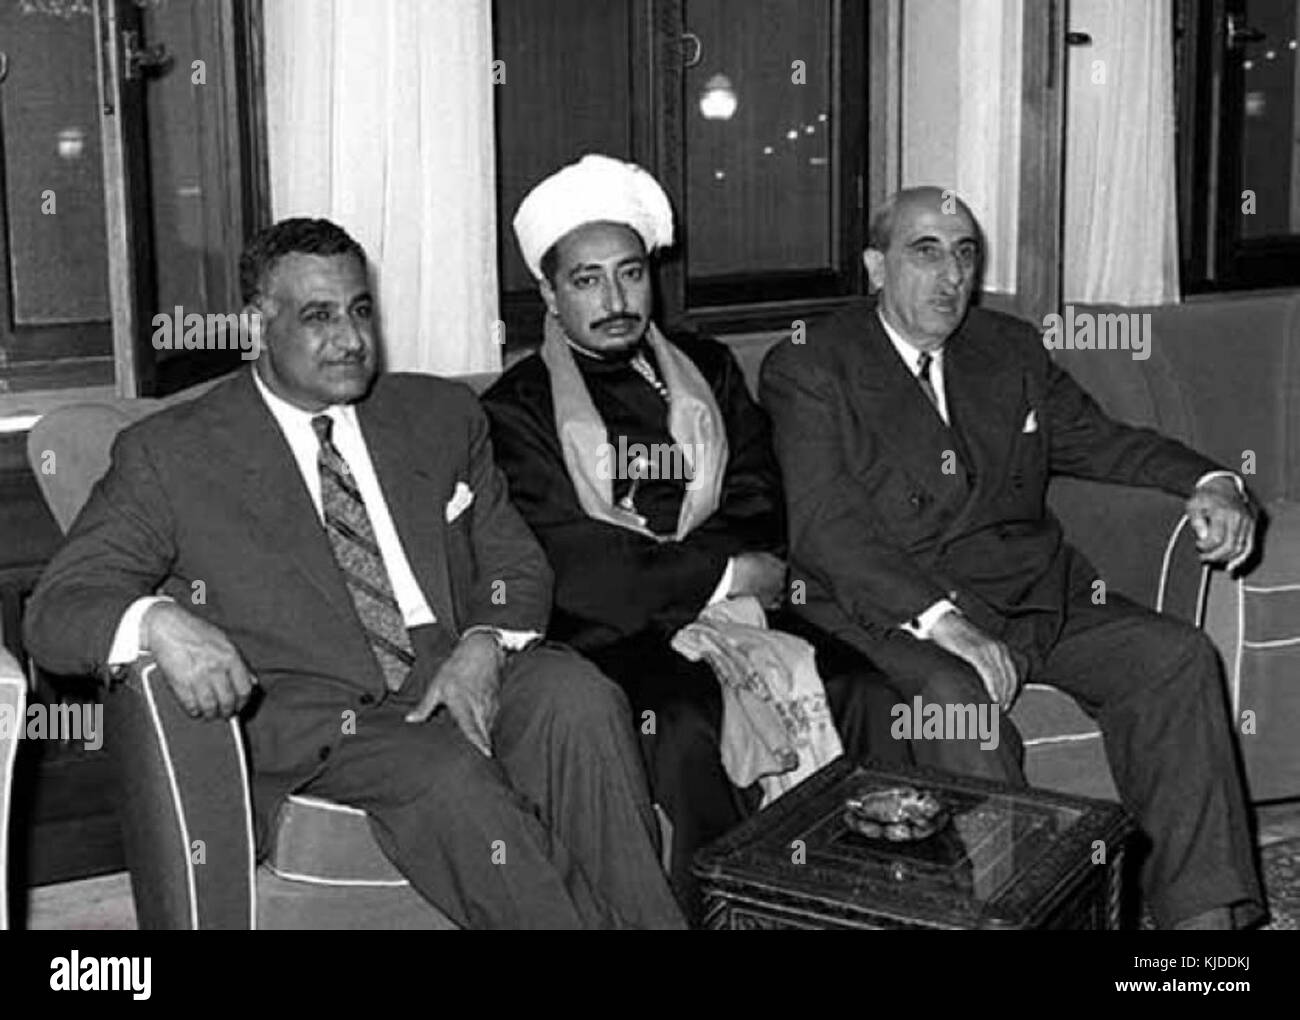 Présidents Gamal Abdul Nasser et Shukri al Quwatli yéménite reçoit le Prince Mohammad Badr à Damas en février 1958 pour les féliciter de la formation de la République arabe unie Banque D'Images